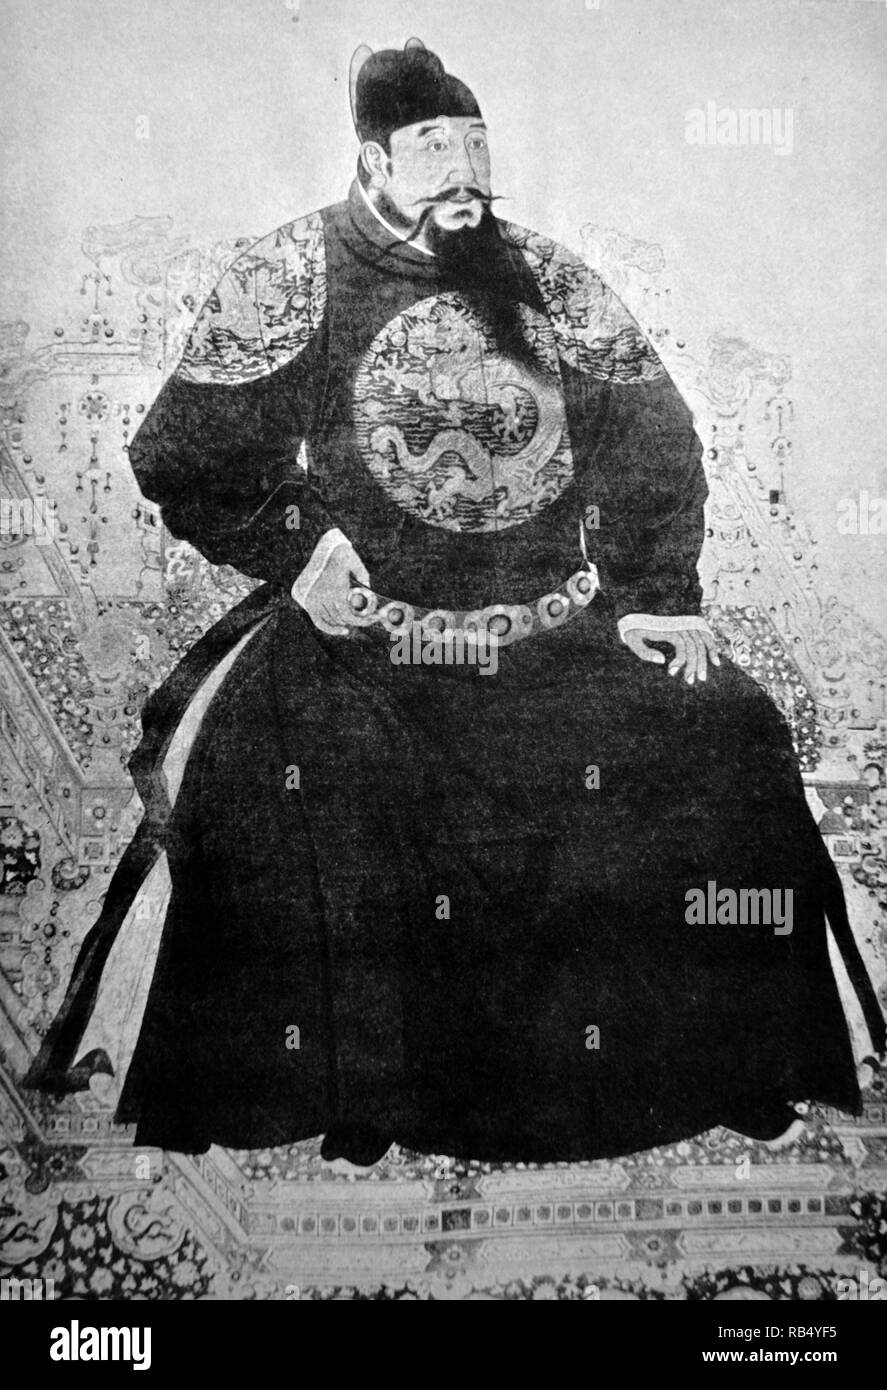 Der Kaiser Yongle (1360 - 1424), vormals Romanisierten als Yung-lo oder Yonglo Kaiser, war der dritte Kaiser der Ming Dynastie in China, Regierende von 1402 bis 1424 Stockfoto